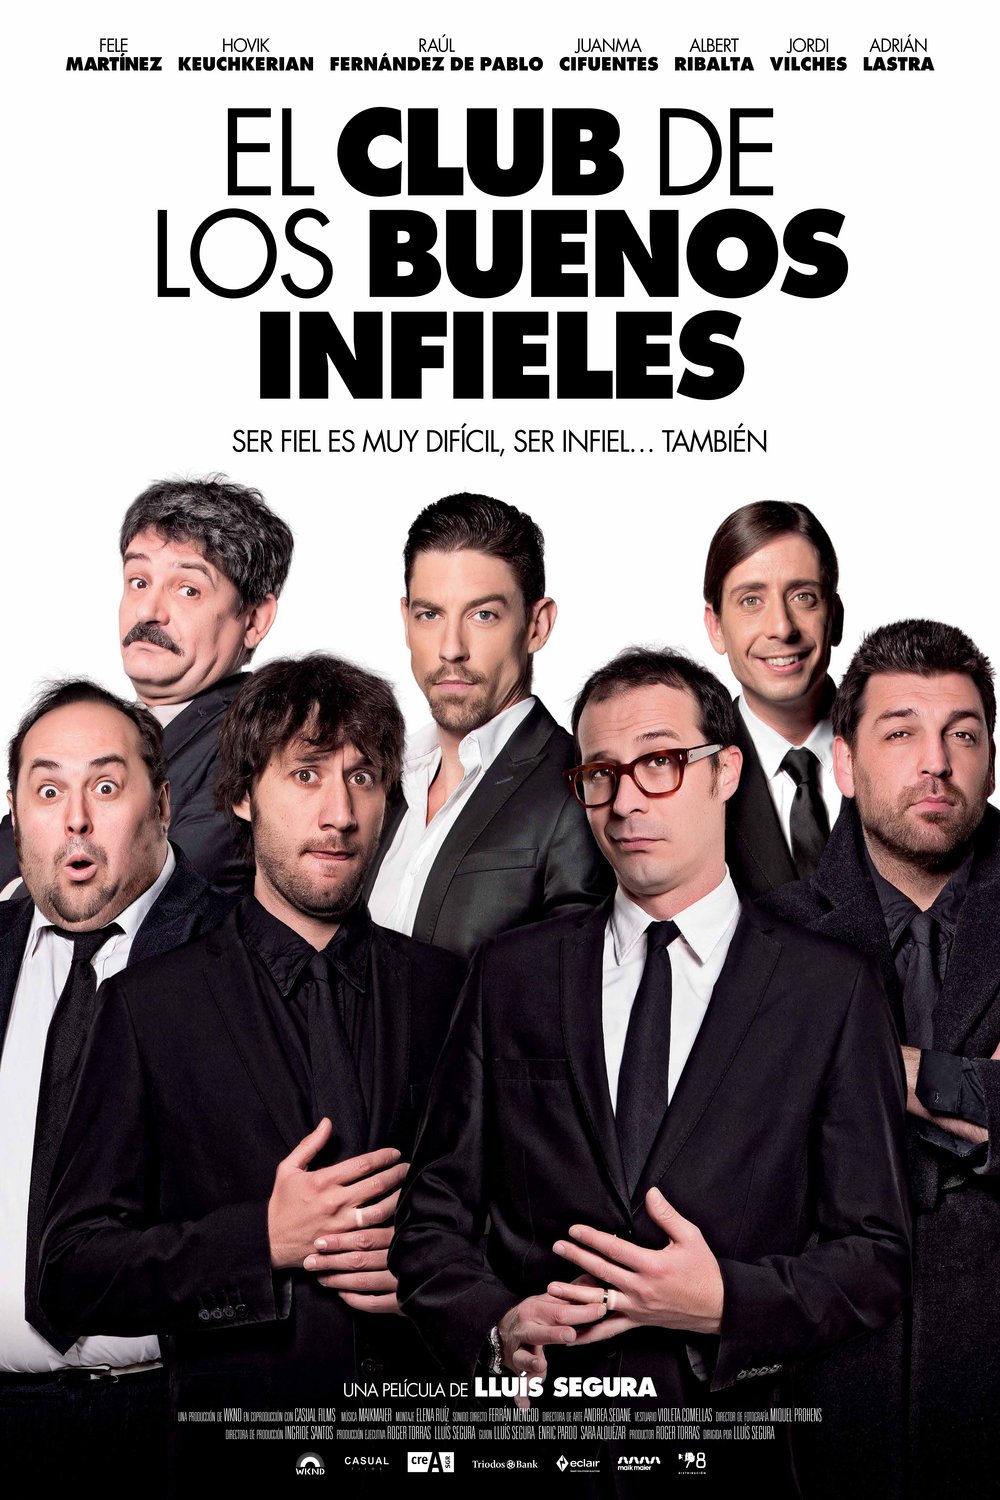 L'affiche originale du film El club de los buenos infieles en espagnol